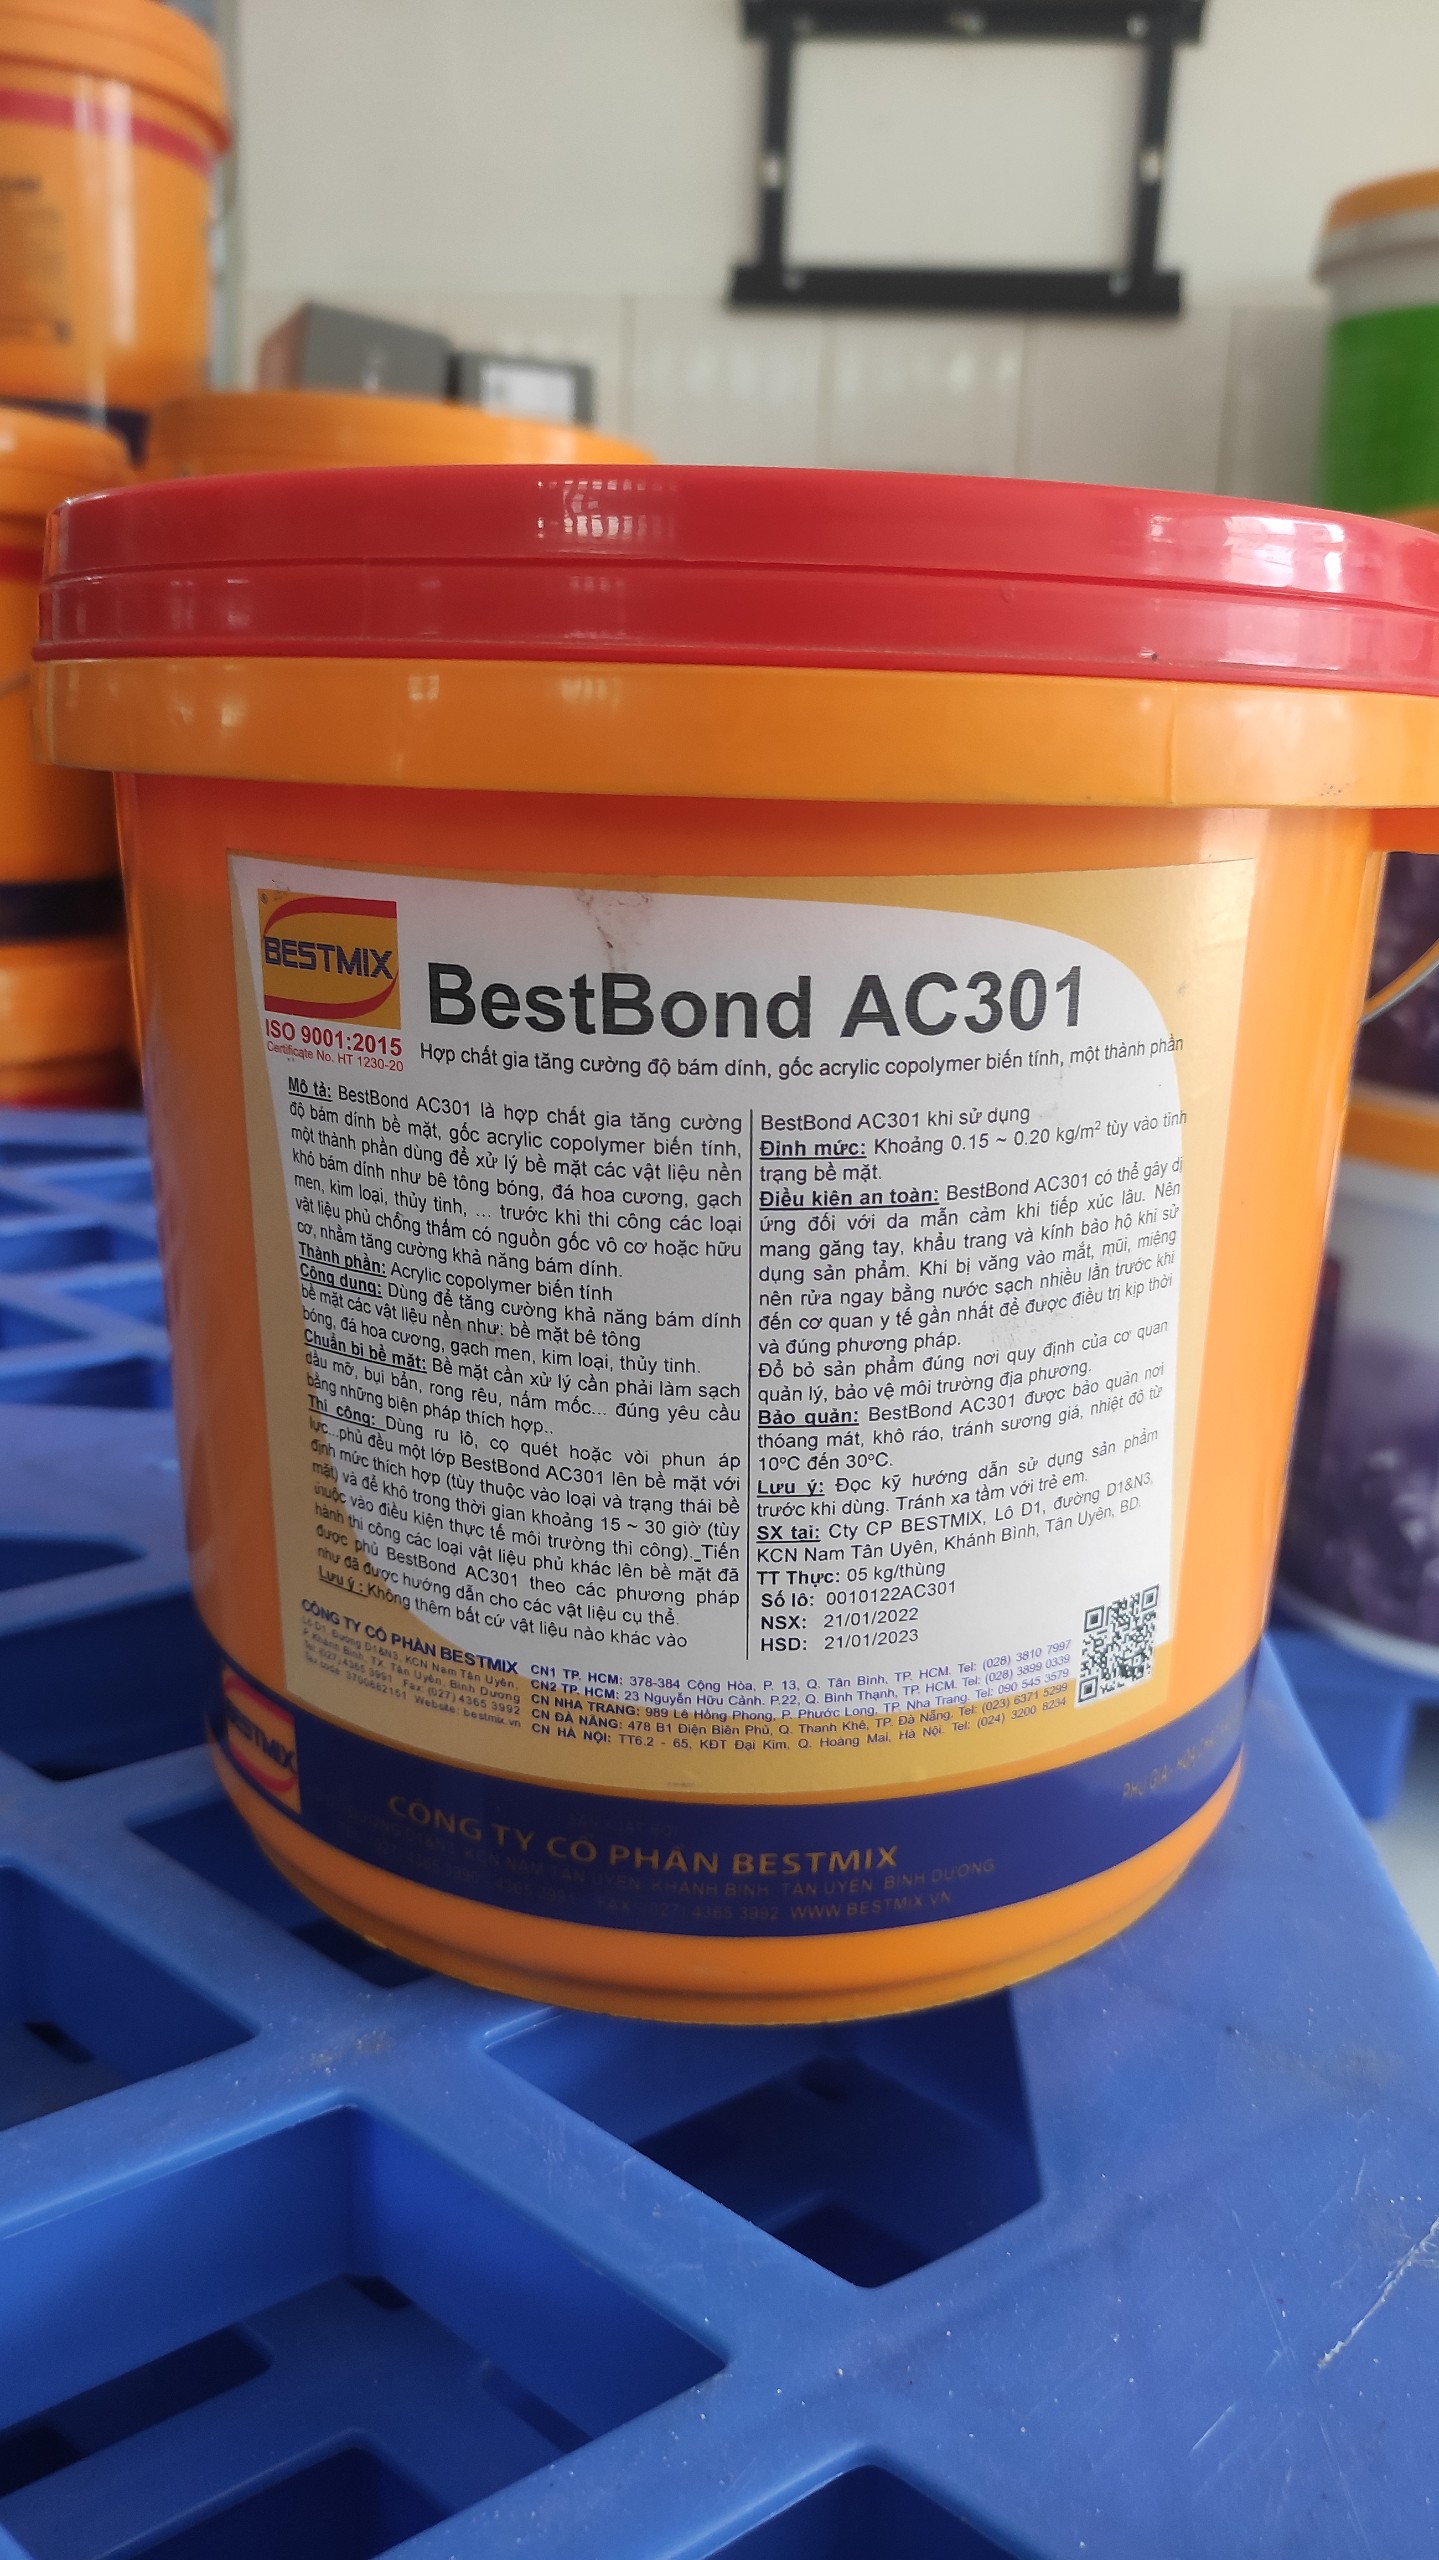 BestBond AC301 -20kg/thùng Hợp chất gia tăng cường độ bám dính, gốc acrylic copolymer biến tính, một thành phần